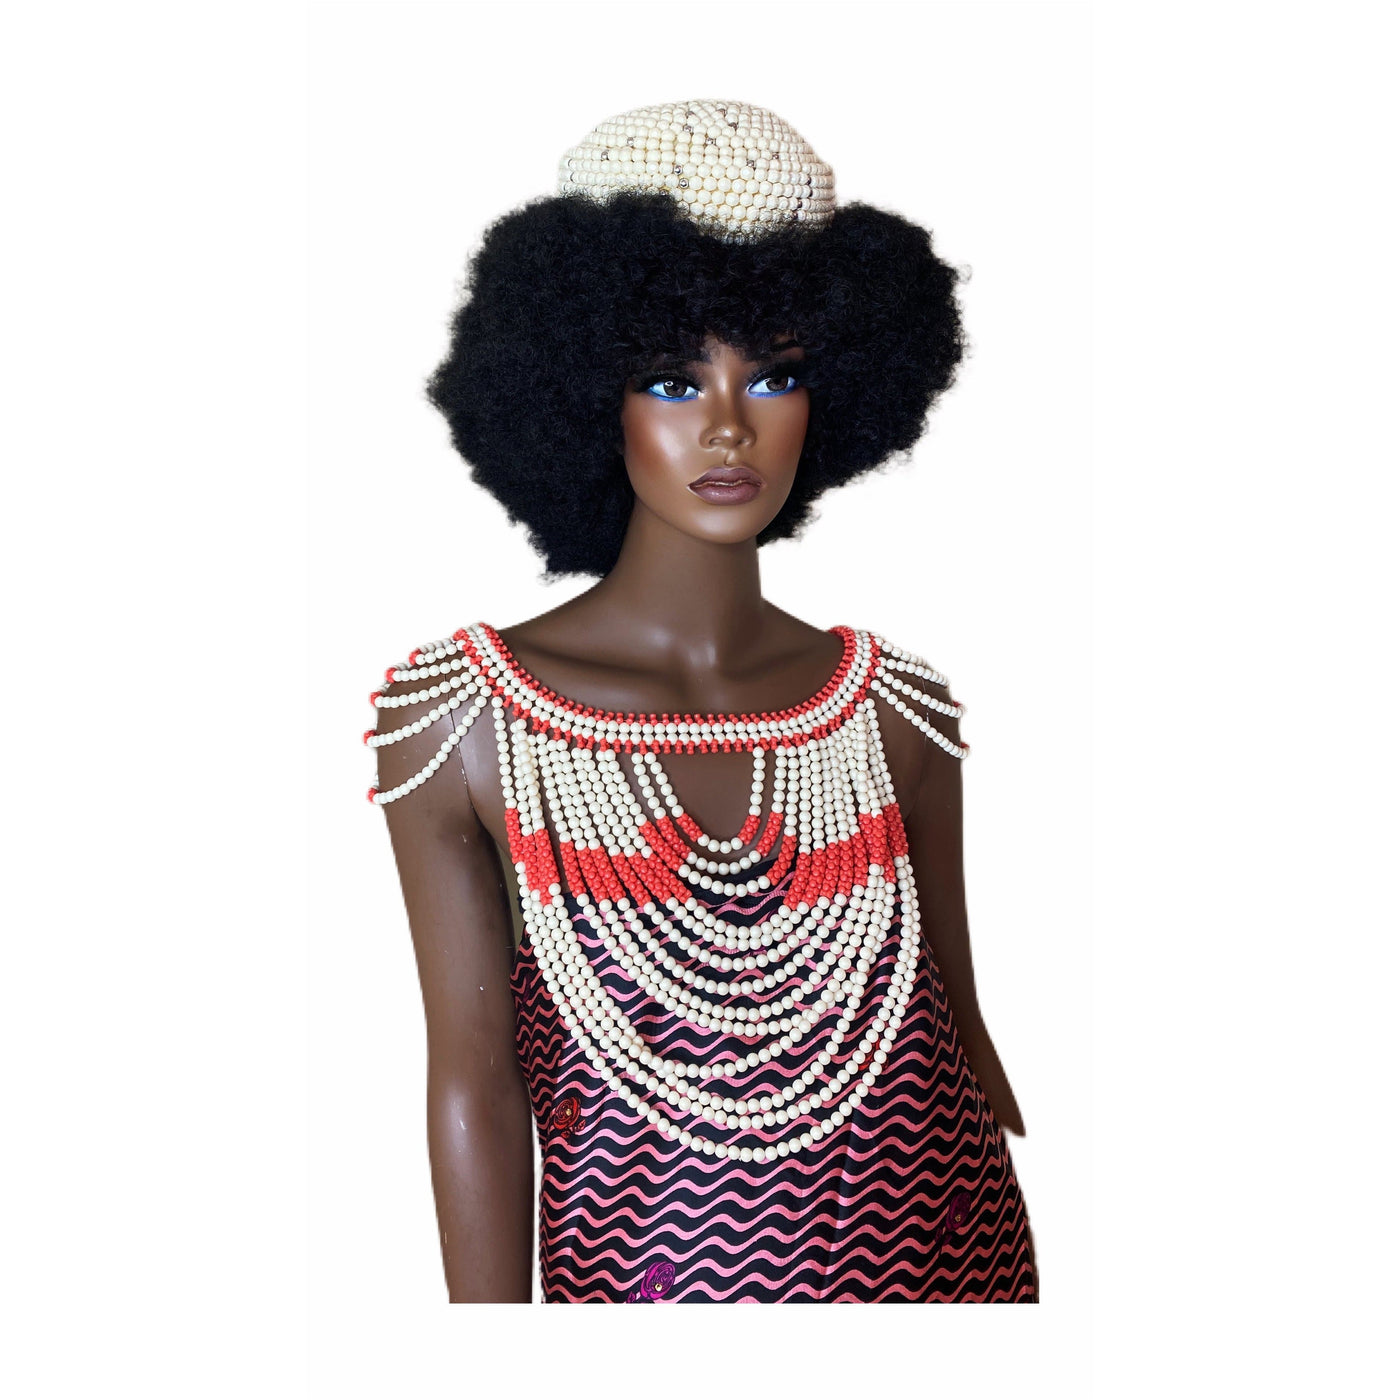 Igbo wedding necklaces - Trufacebygrace